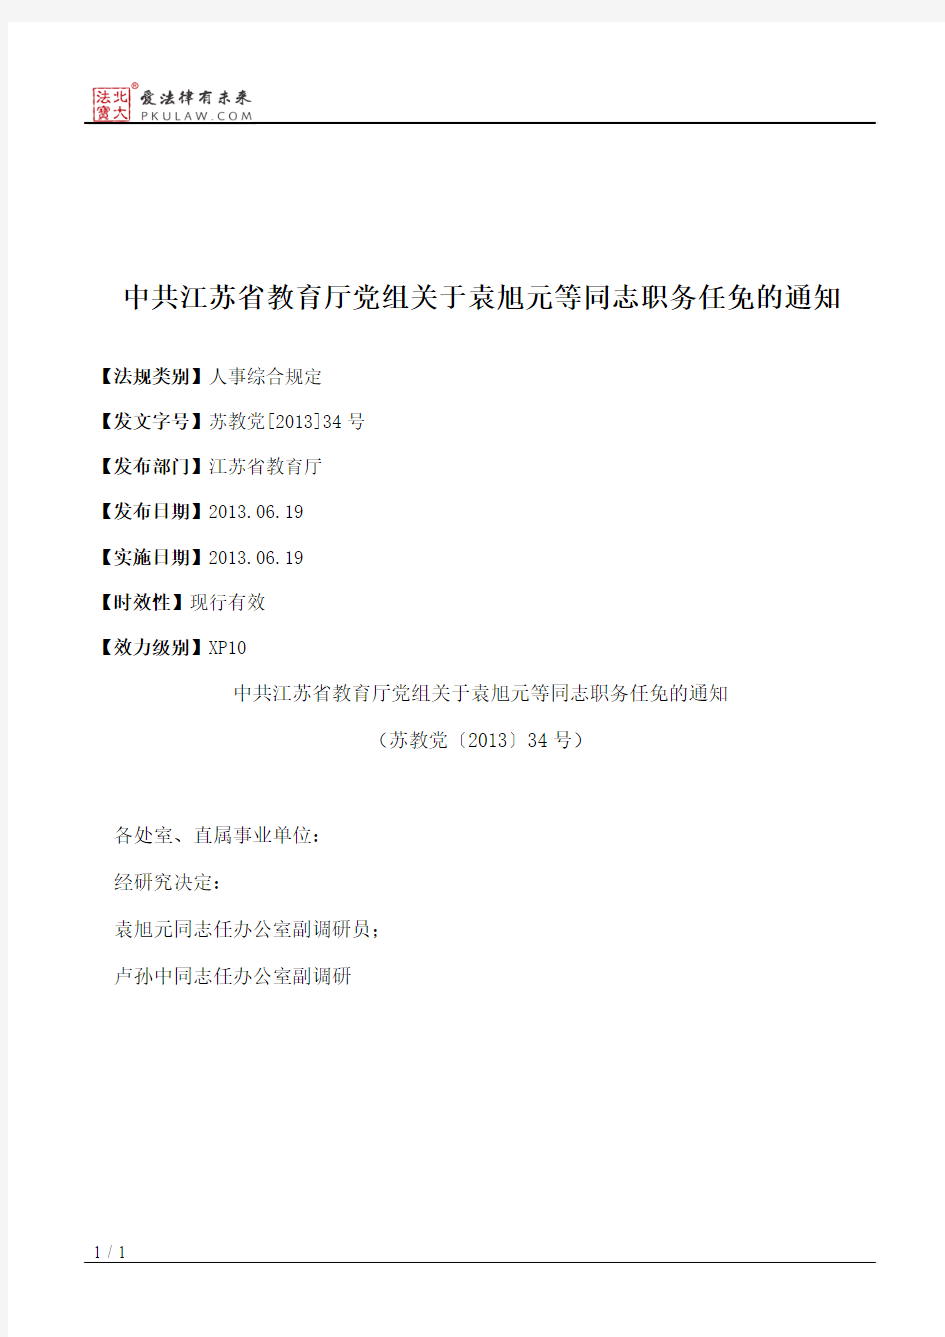 中共江苏省教育厅党组关于袁旭元等同志职务任免的通知